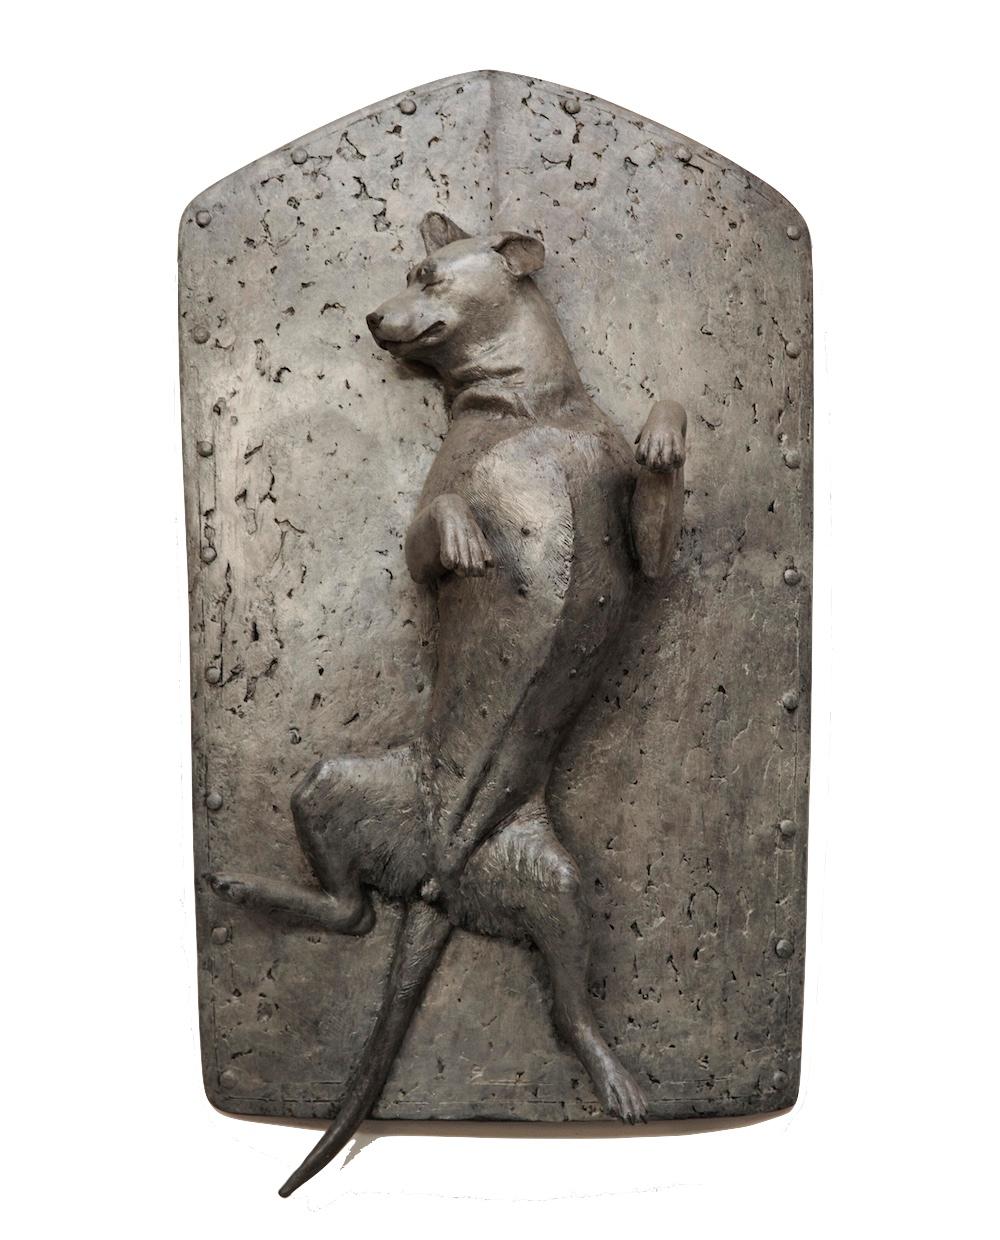 Li Shengzeng Still-Life Sculpture - Sculpture: The Dog Series - My Companion no.4